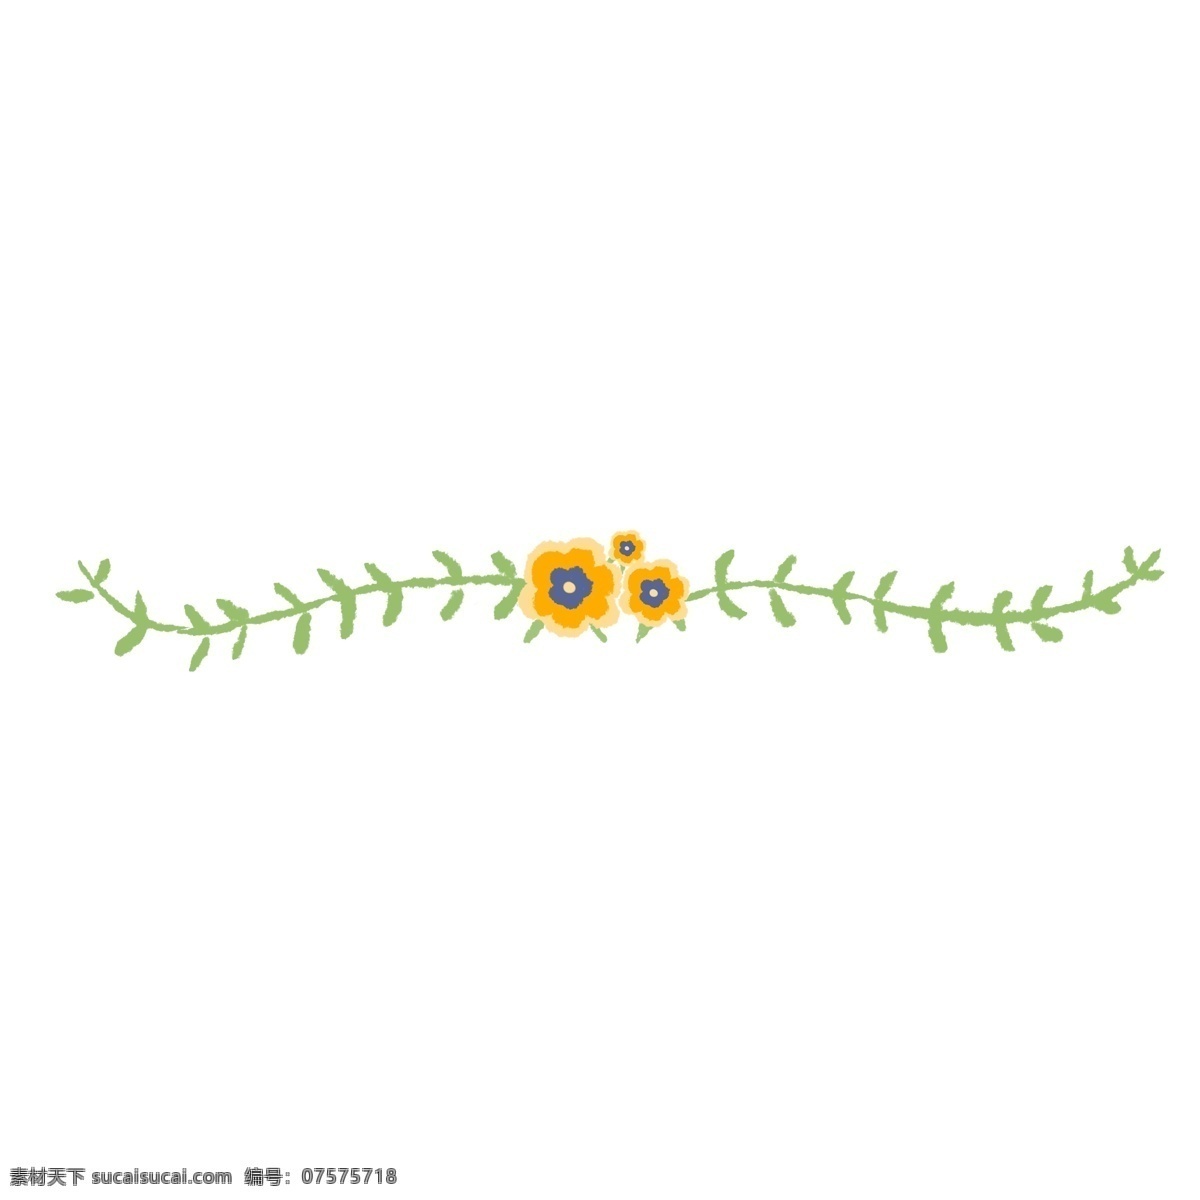 黄色 小花 分割线 插画 黄色的分割线 向日葵分割线 植物分割线 叶子分割线 分割线装饰 分割线插画